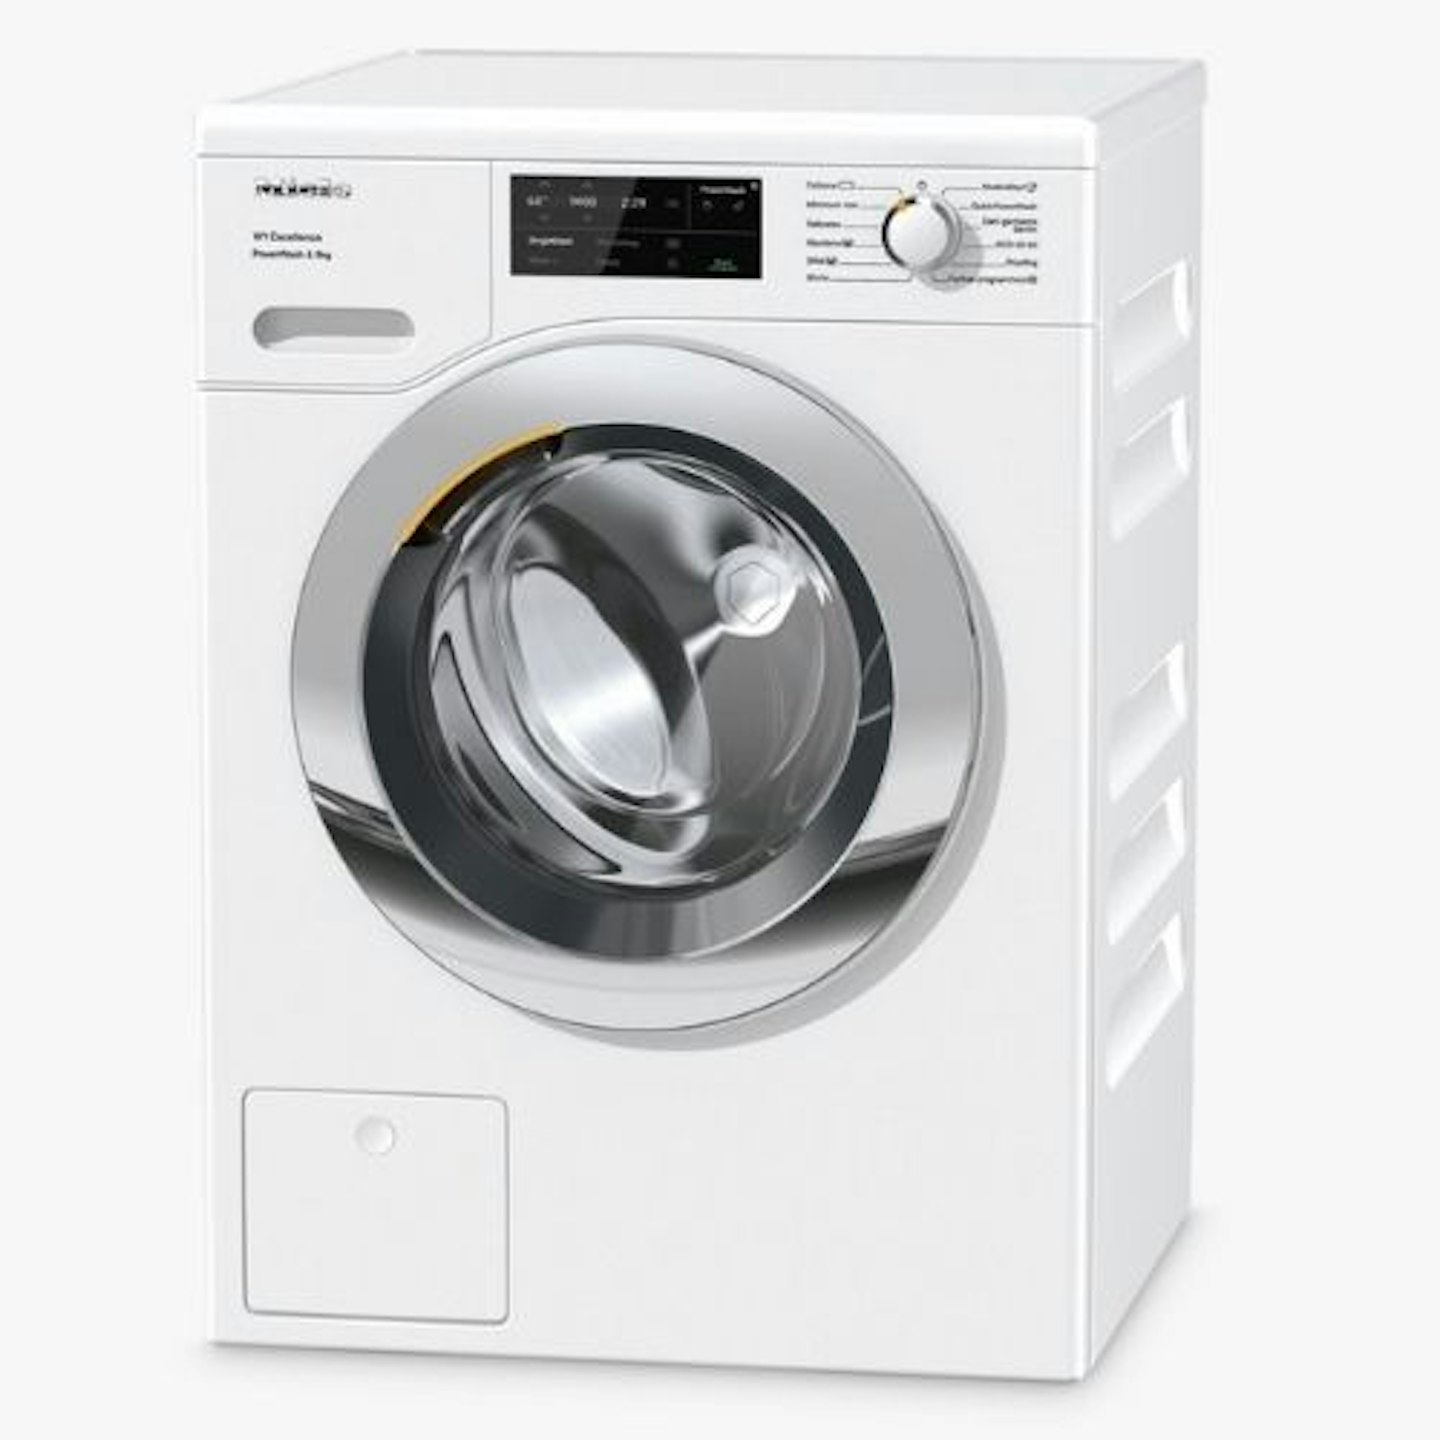 Miele WEG365 Freestanding Washing Machine,